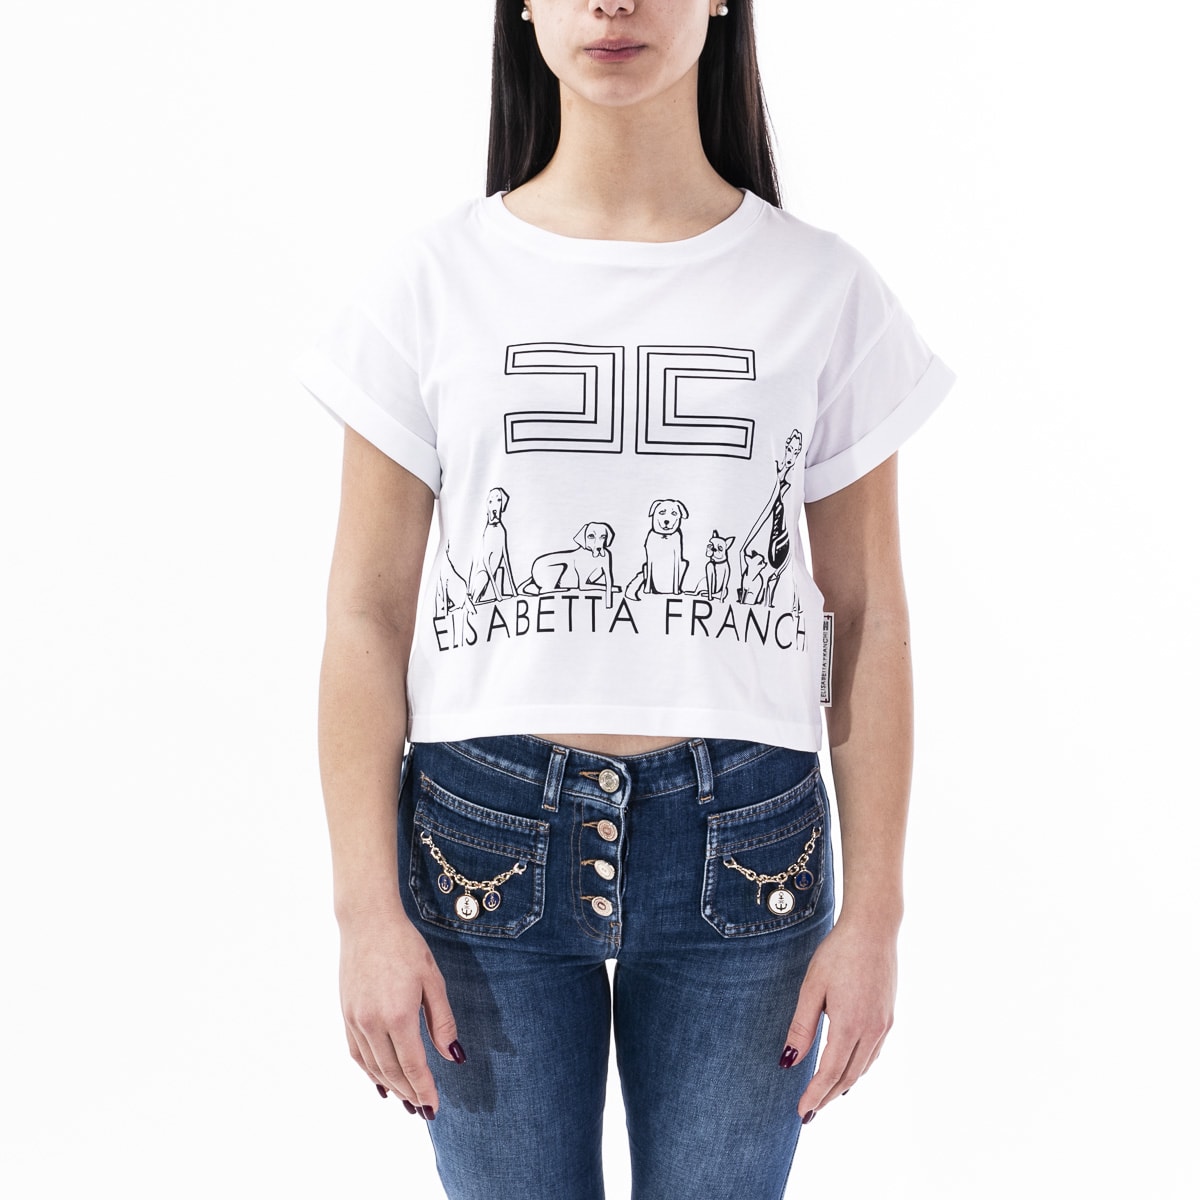 Elisabetta Franchi Shirt Online Sale, UP TO 68% OFF | www.loop-cn.com